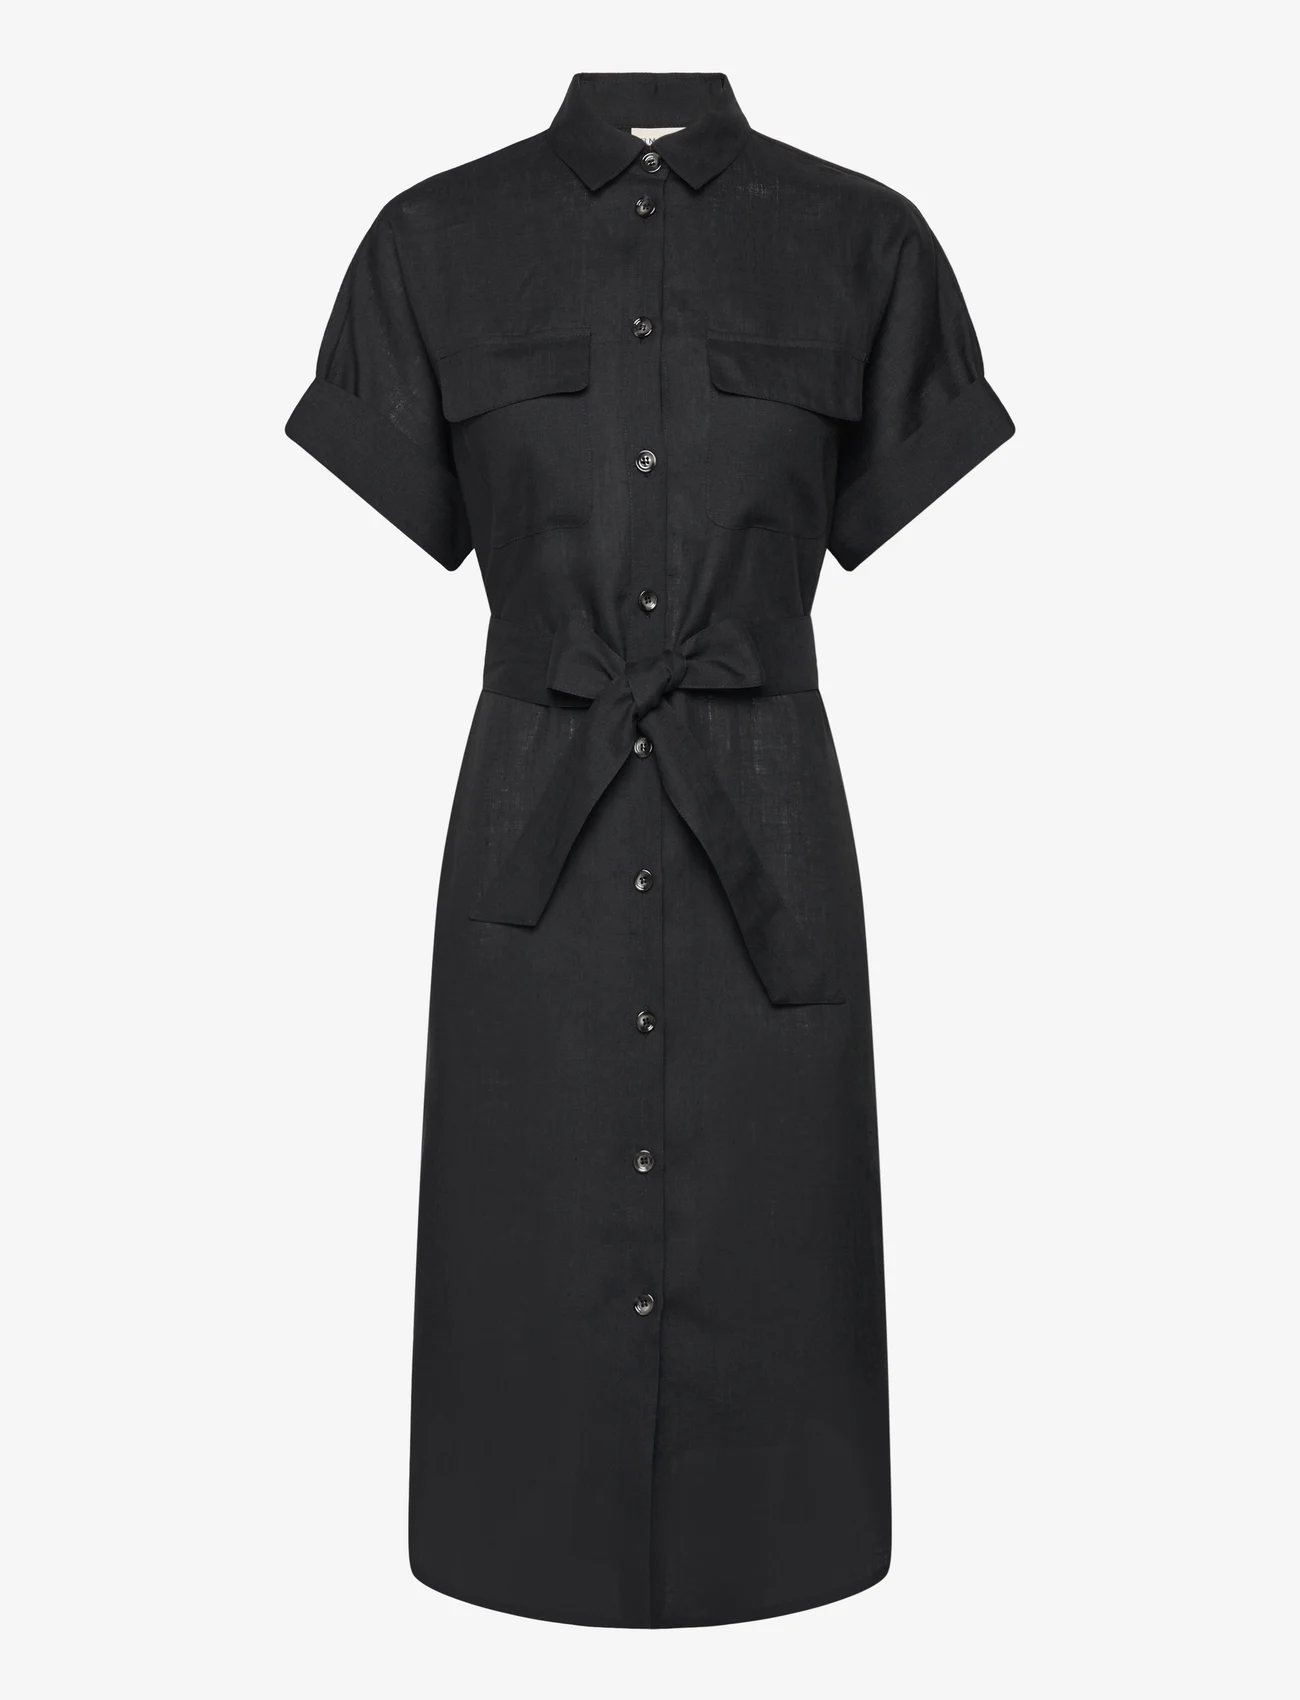 Balmuir - Sahara linen shirt dress - overhemdjurken - black - 0